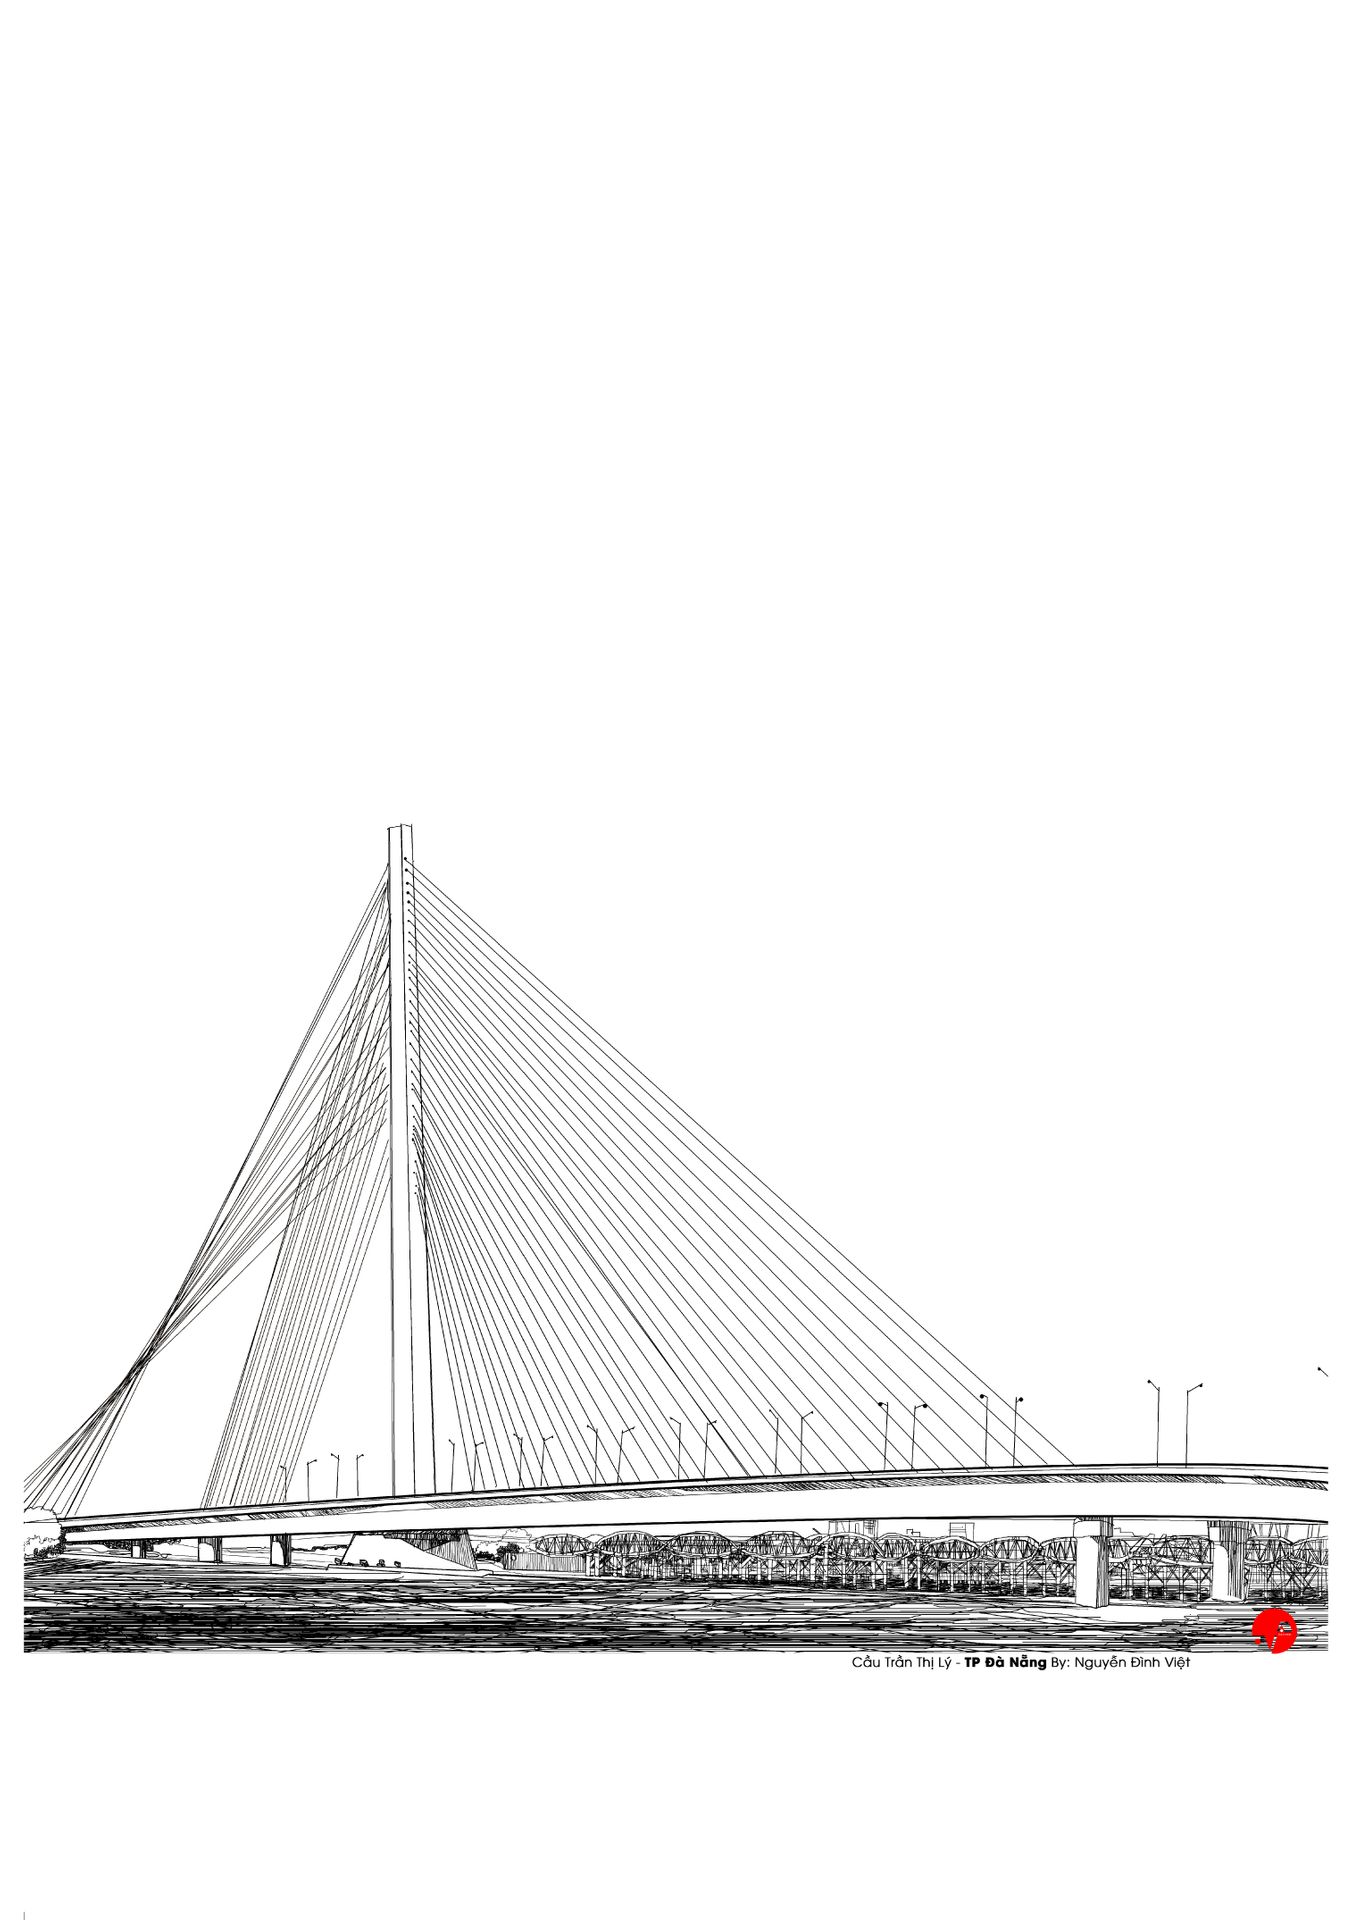 Cầu Trần Thị Lý: Cầu Trần Thị Lý với kiến trúc hiện đại sẽ là điểm đến hấp dẫn cho bạn ngắm cảnh và chụp ảnh đẹp tại Đà Nẵng. Hãy chiêm ngưỡng vẻ đẹp lung linh về đêm của cầu Trần Thị Lý bằng những hình ảnh đẹp nhất bạn chưa từng thấy.